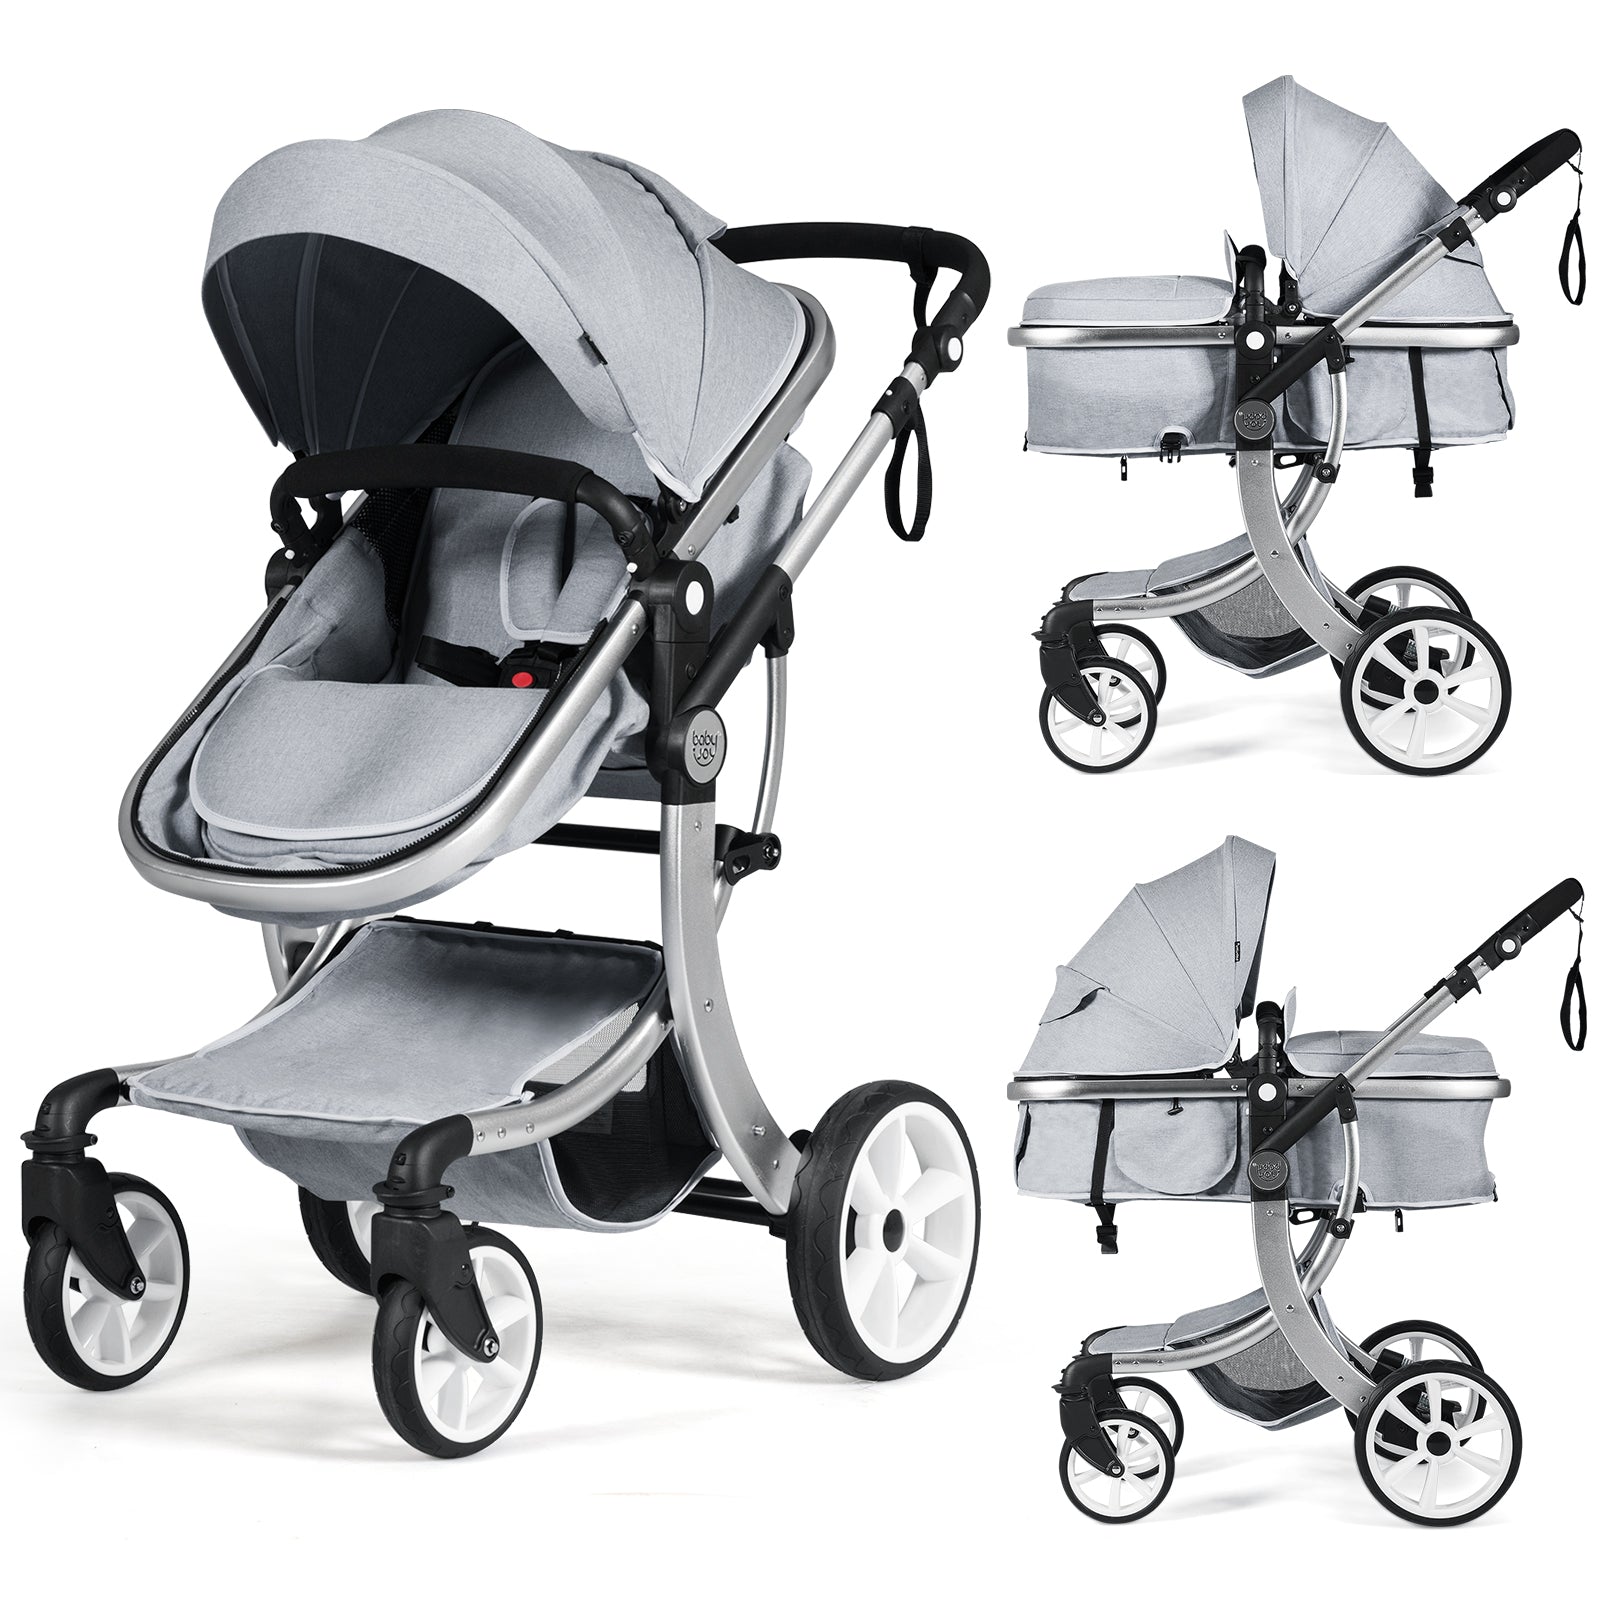 BABYJOY Premium High Landscape 2-in-1 Baby Stroller